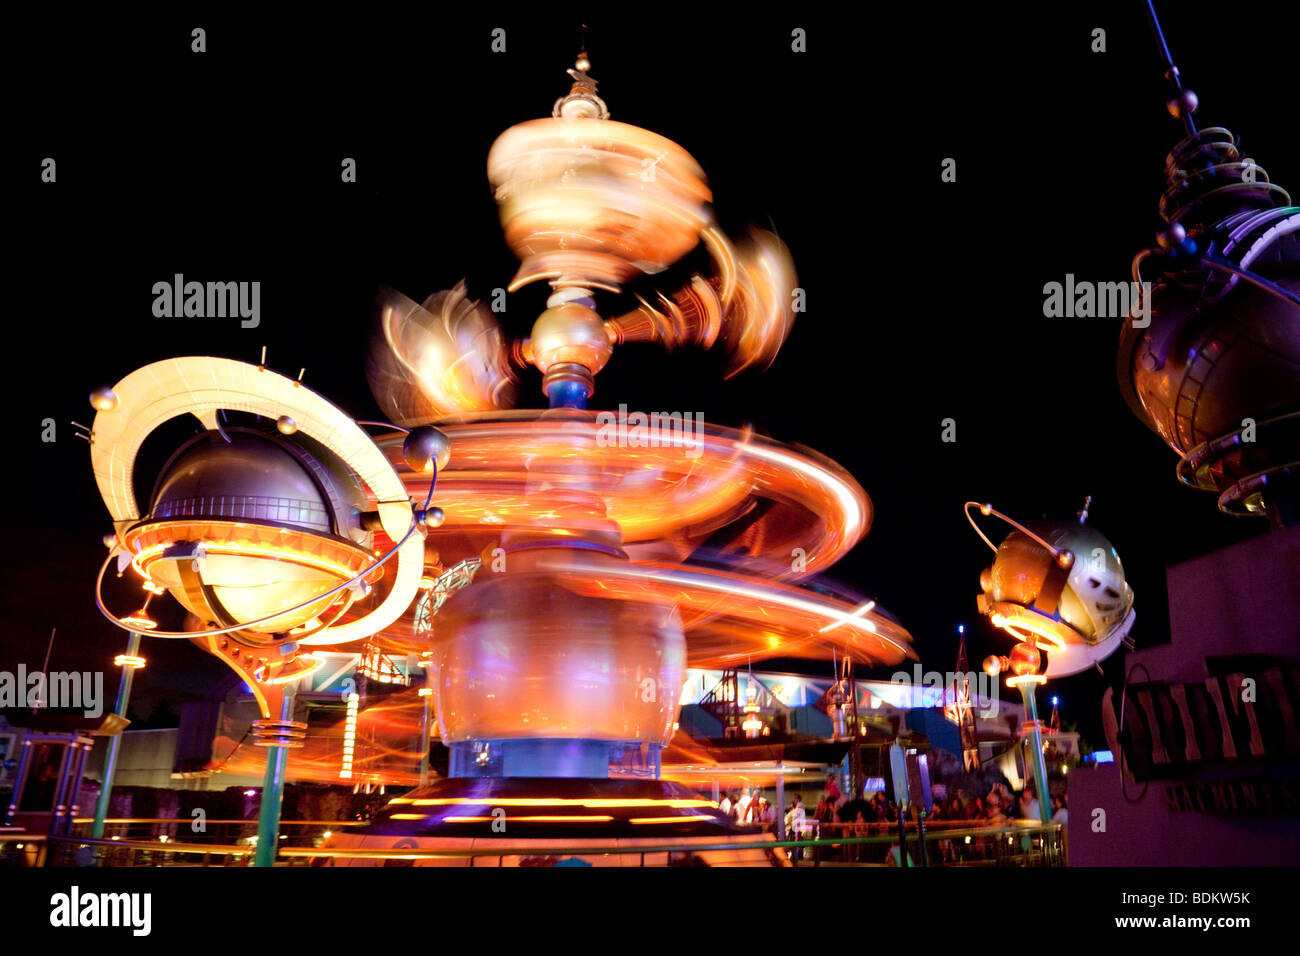 Disneyland Paris, le Rocket carousel merry go round de nuit en mouvement, France Europe Banque D'Images